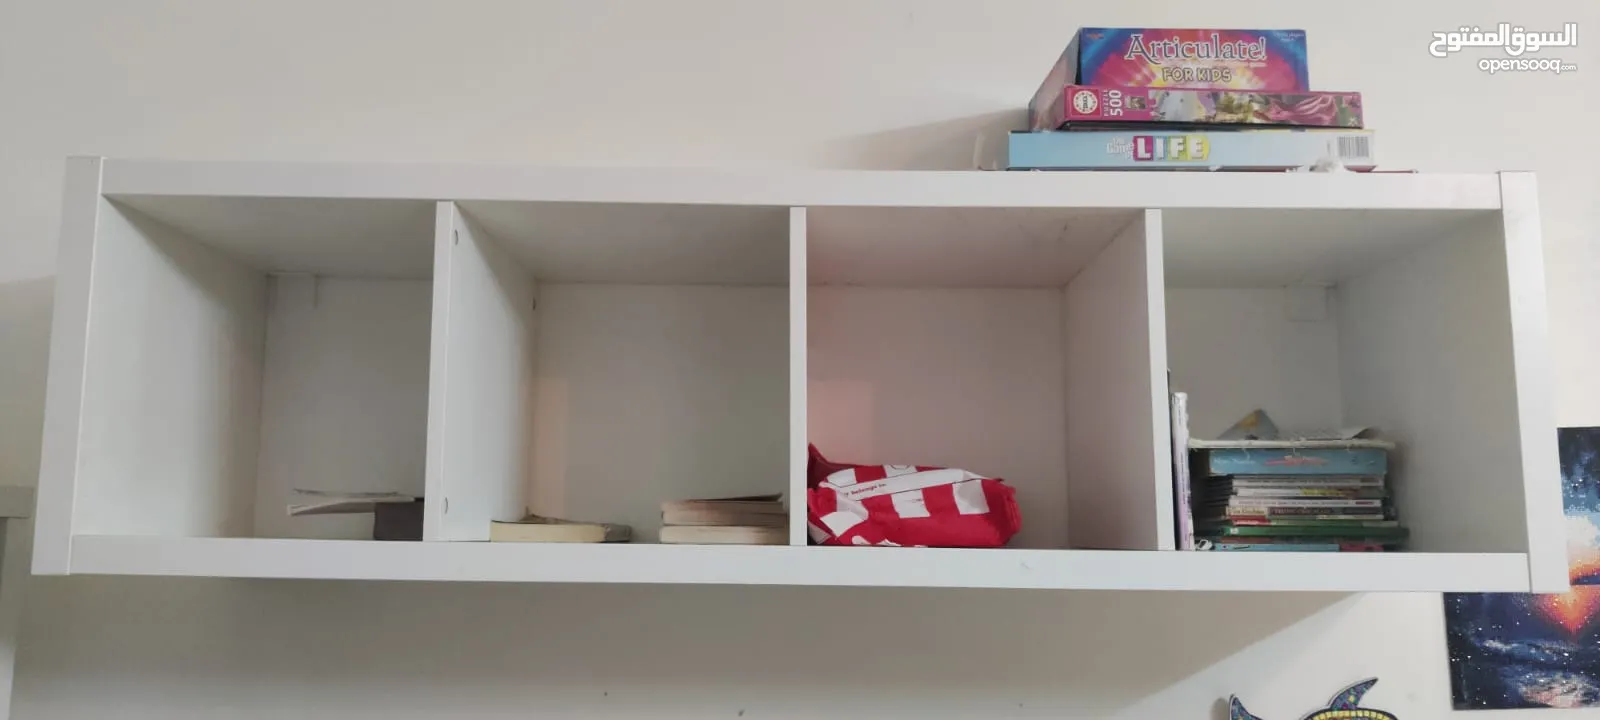 2 IKEA bookshelves